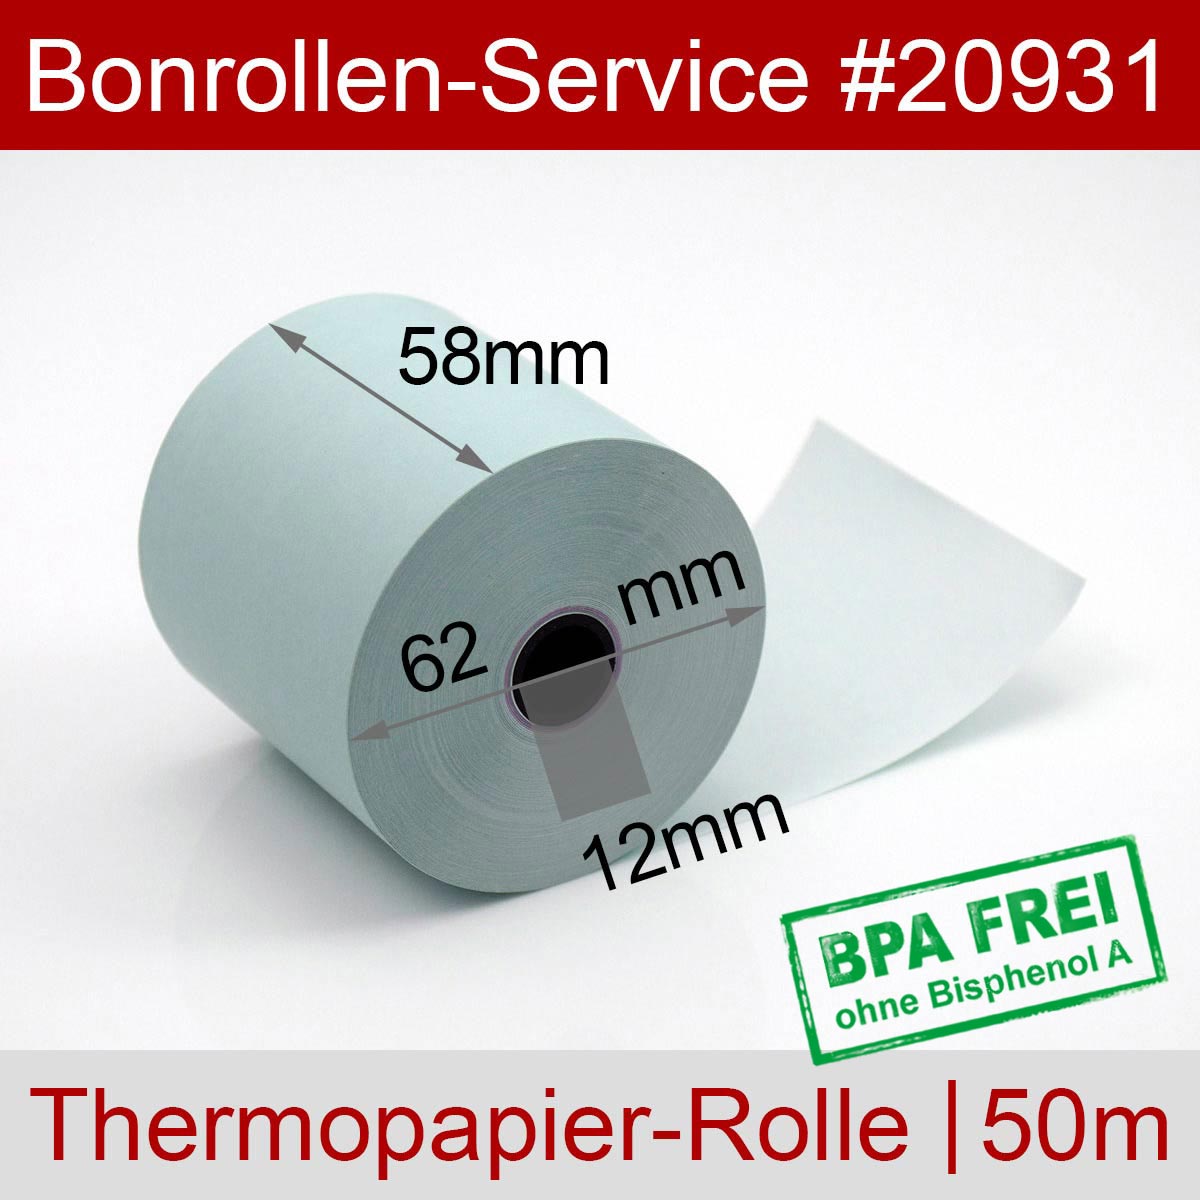 20 Stück Bonrollen Thermo 58mm x 50m x 12mm Kassenrollen für Registrierkassen/Waagen mit 58mm Bonbreite